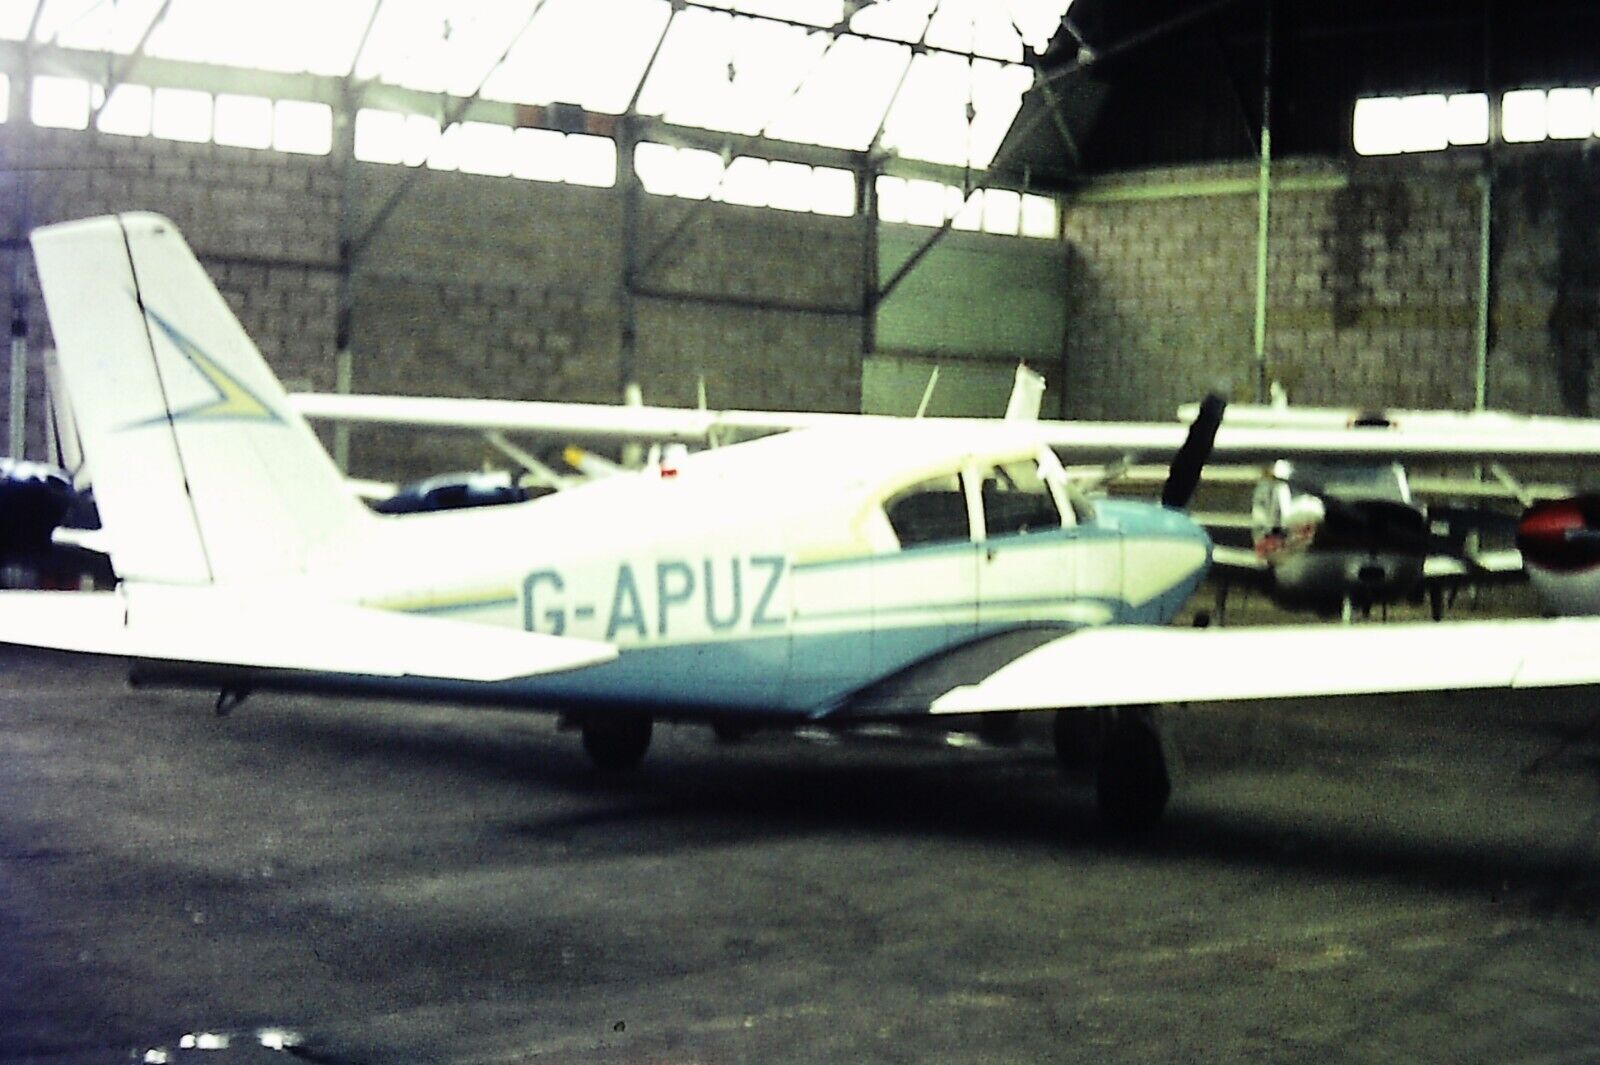 PIPER PA-24-250 COMANCHE Aeroplane (G-APUZ) - Vintage 35mm SLIDE